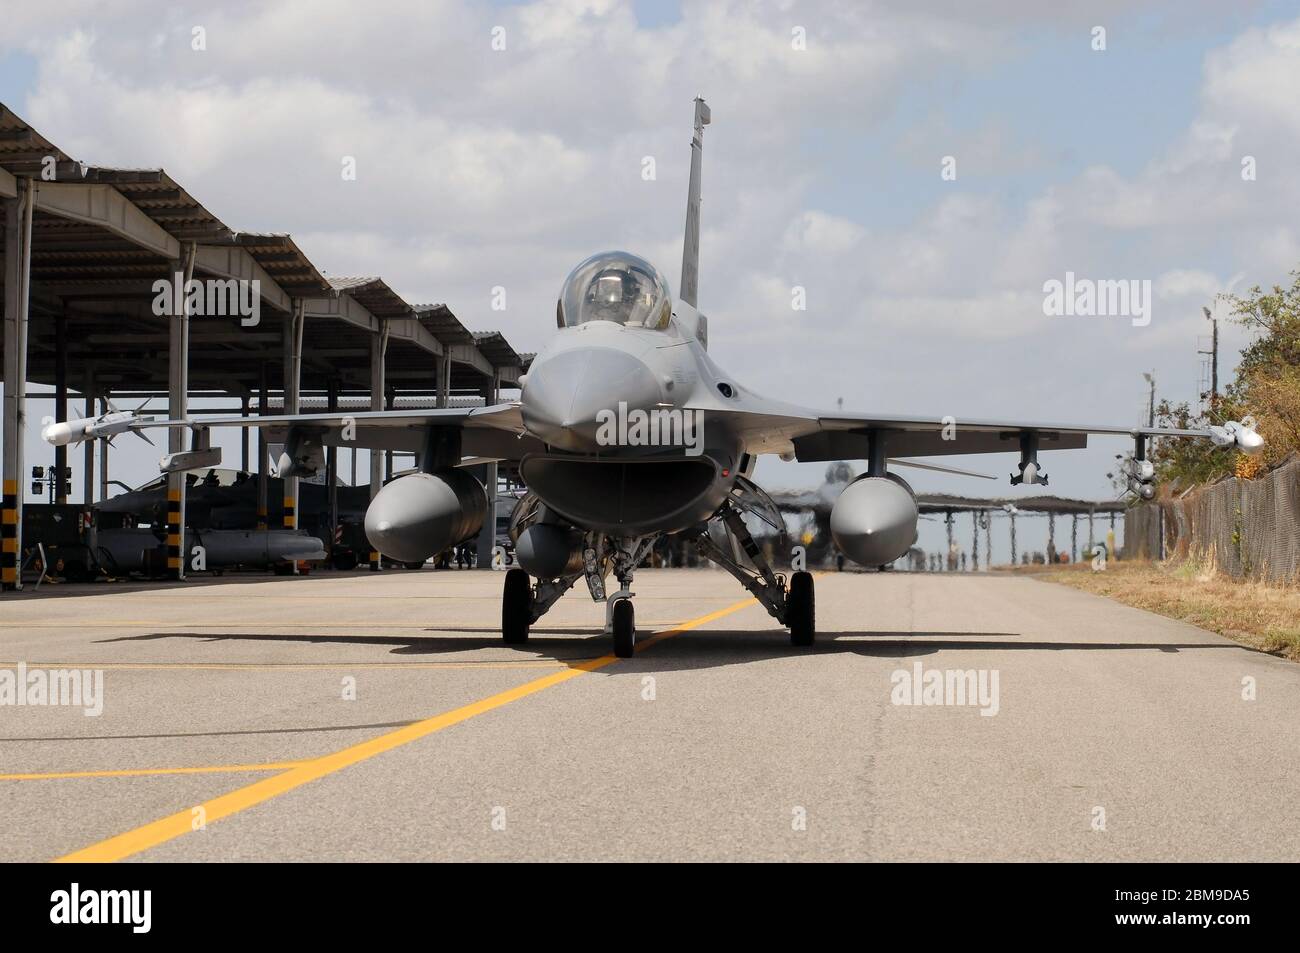 Natal, Brasile, 9 novembre 2010. F-16 caccia jet della United States Air Force - alla base aerea Natal nel nord-est del Brasile. Foto Stock